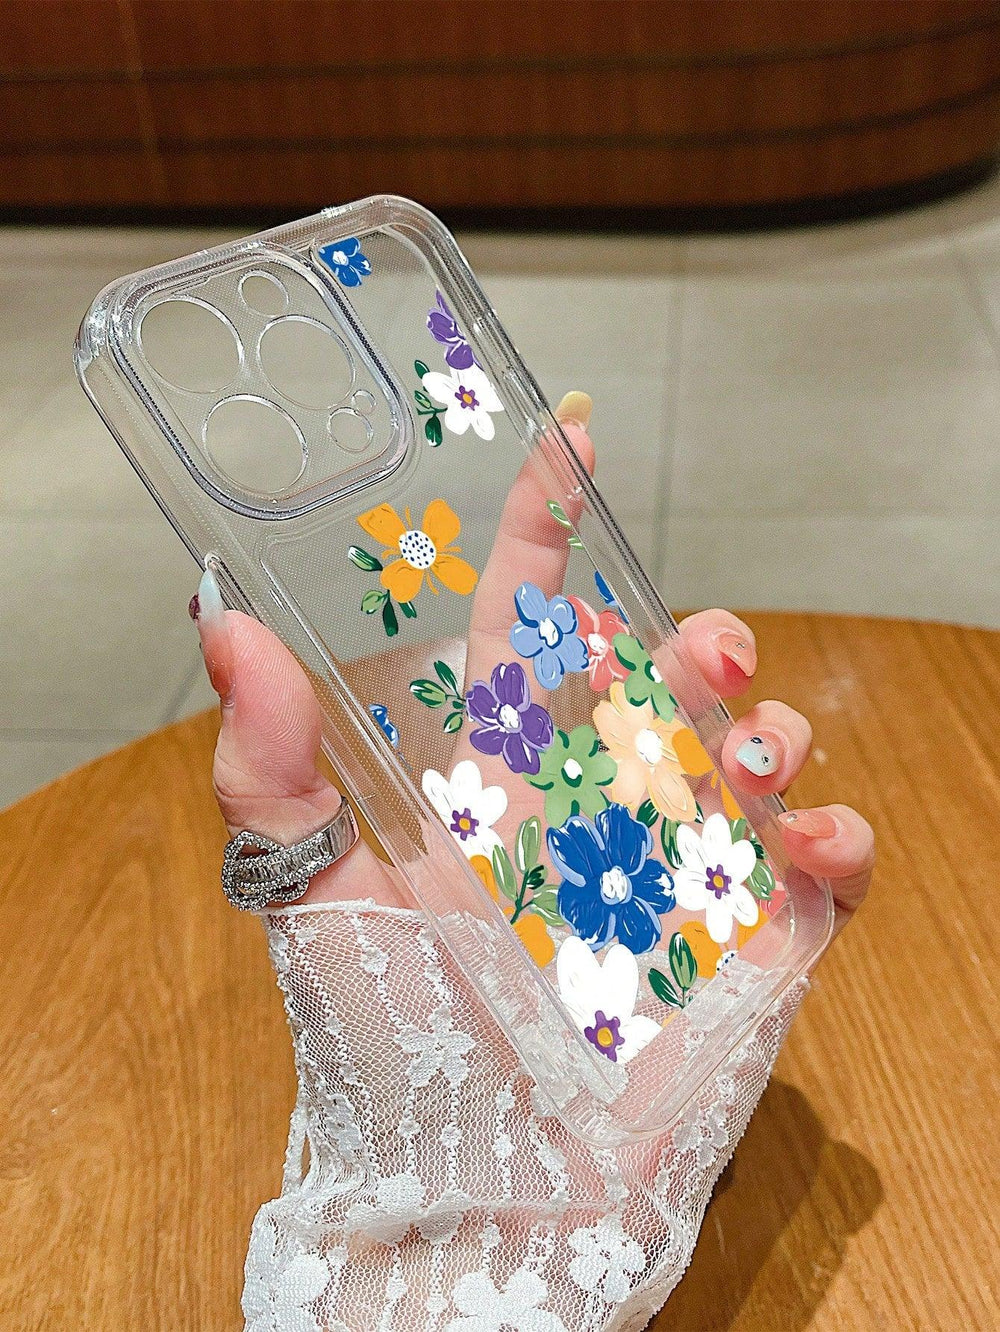 Premium Flower Multicolor Phone Cases - Brand My Case